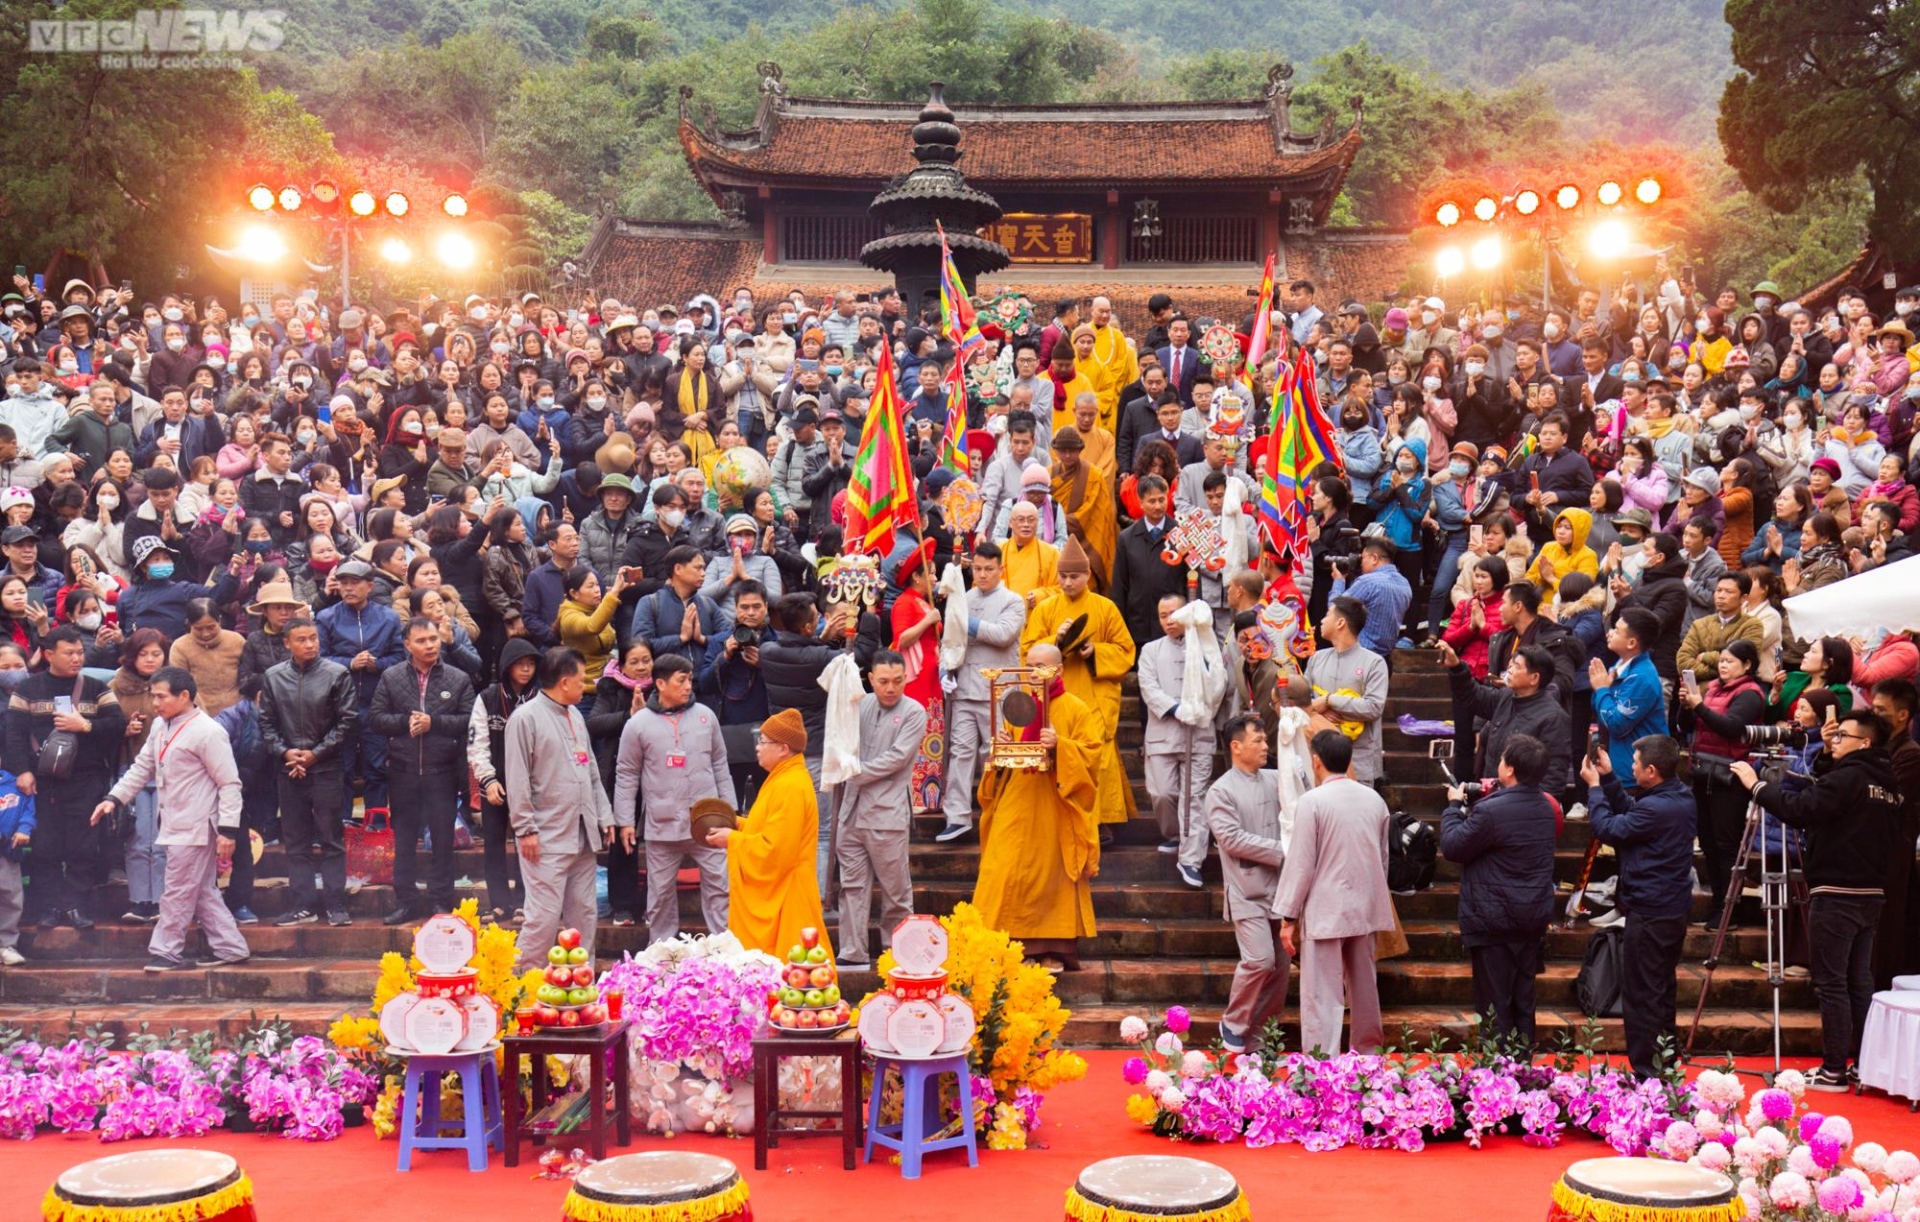 Hàng chục nghìn du khách đội mưa rét trẩy hội chùa Hương ngày đầu năm